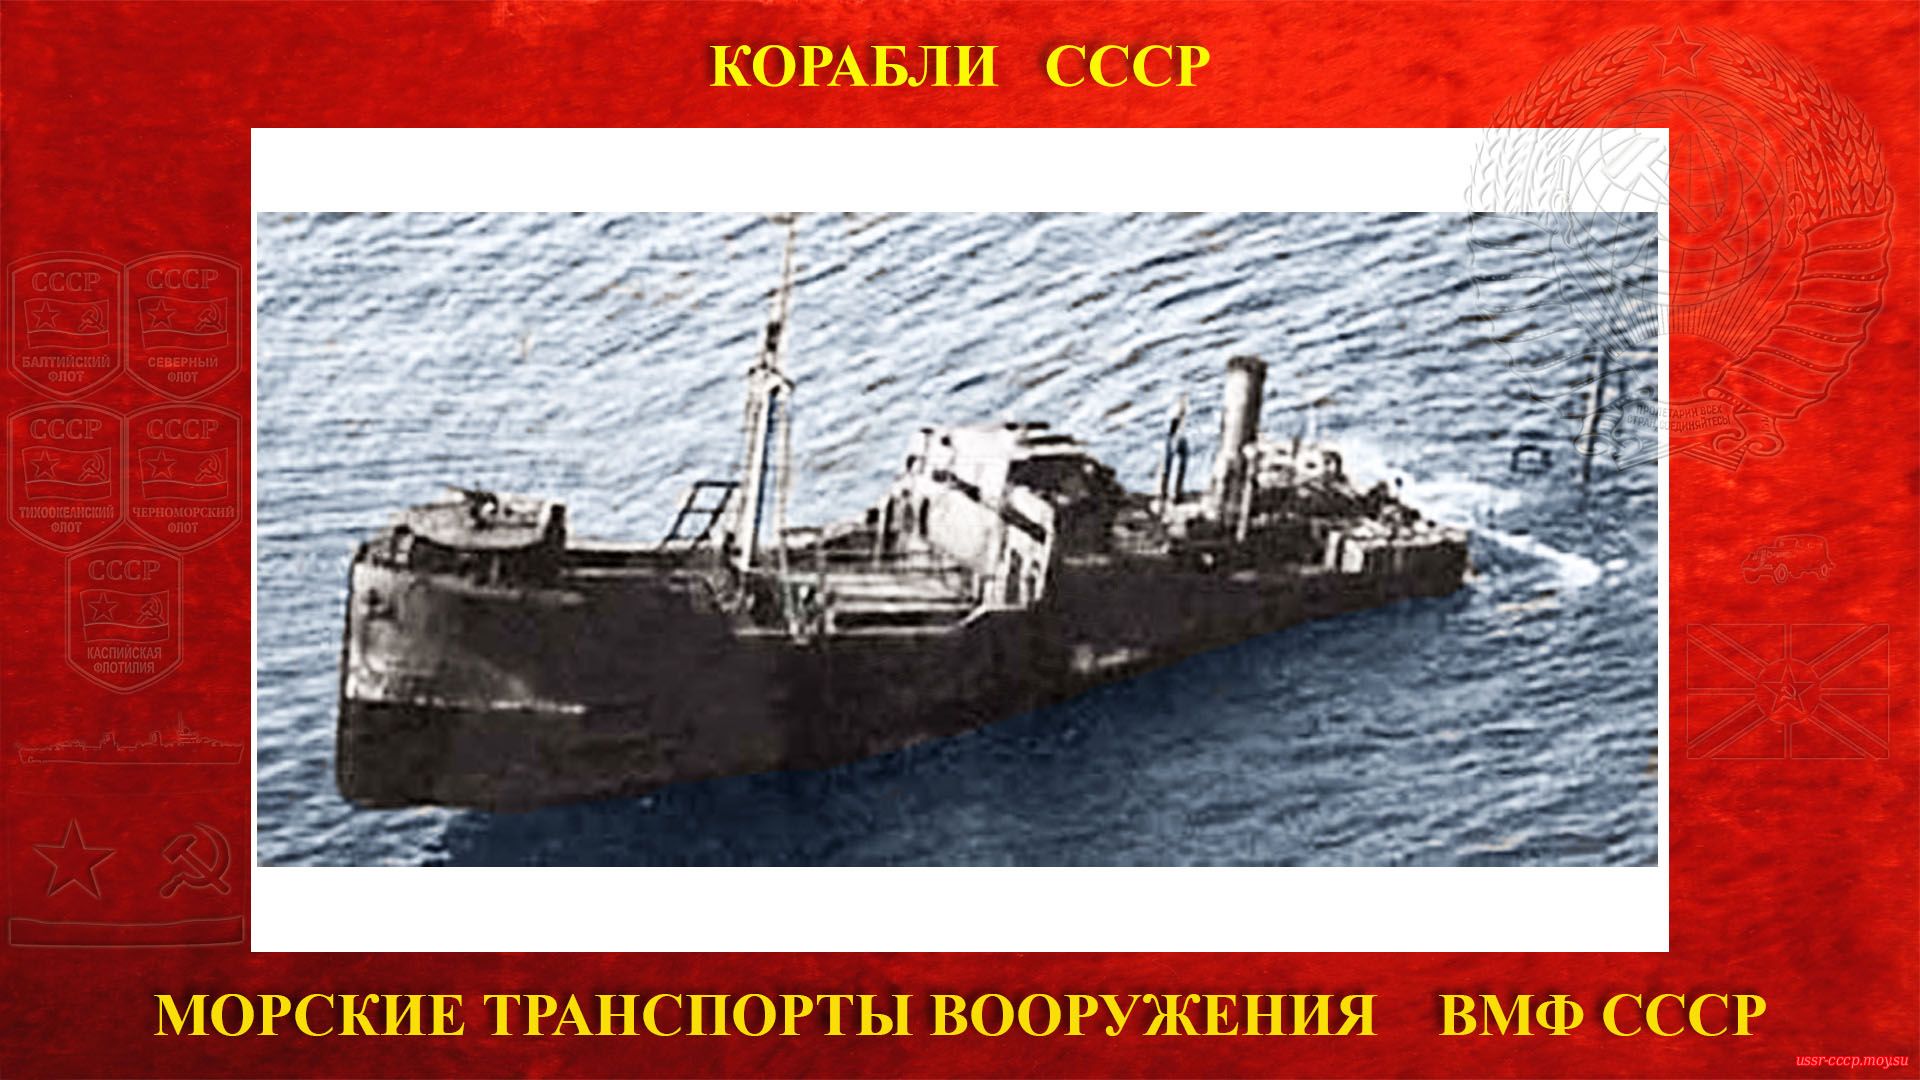 МТВ (Ашхабад) — Советский транспорт вооружения ВМФ СССР